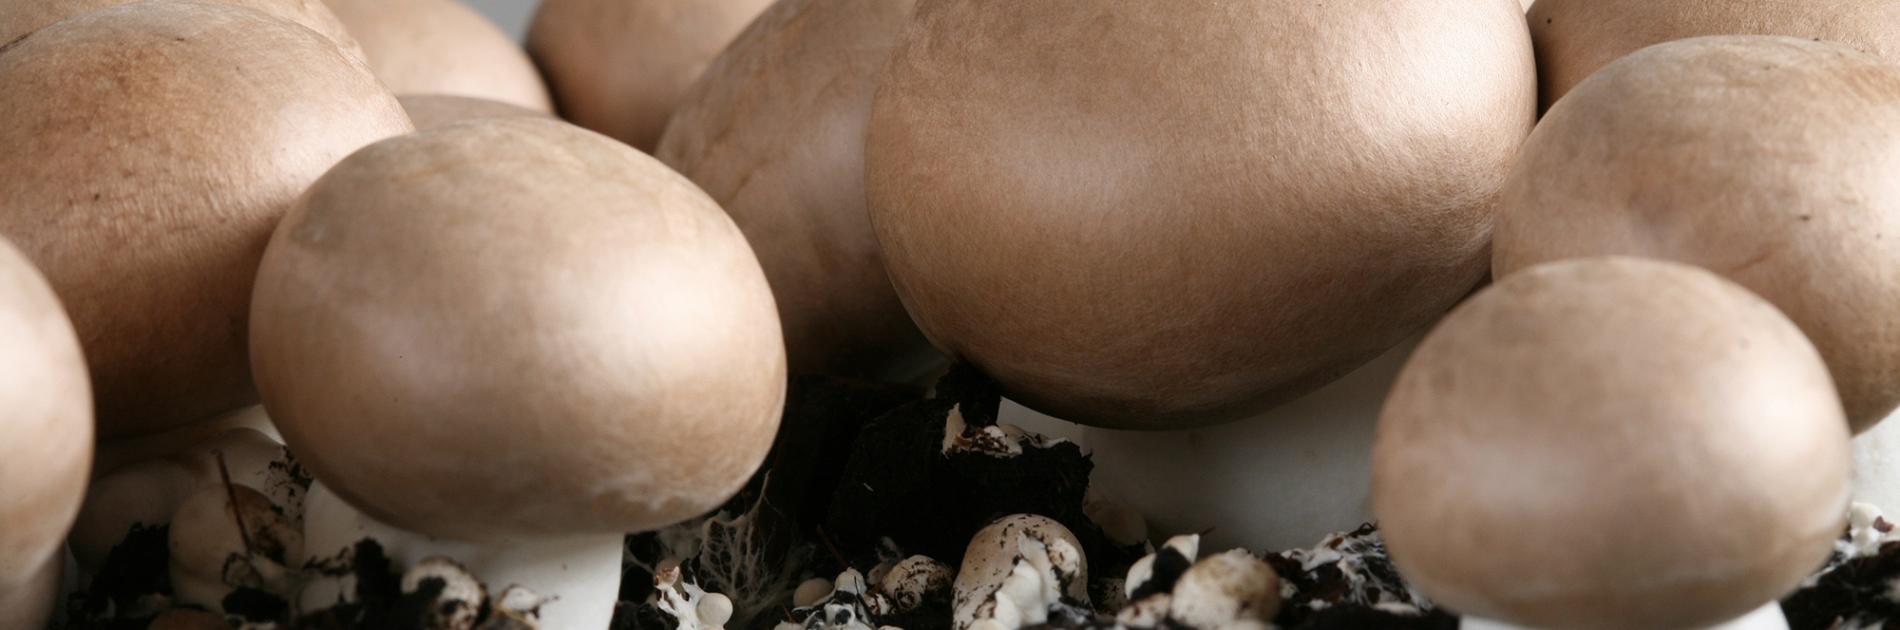 Extra vitamine D in de paddenstoelen van Limax